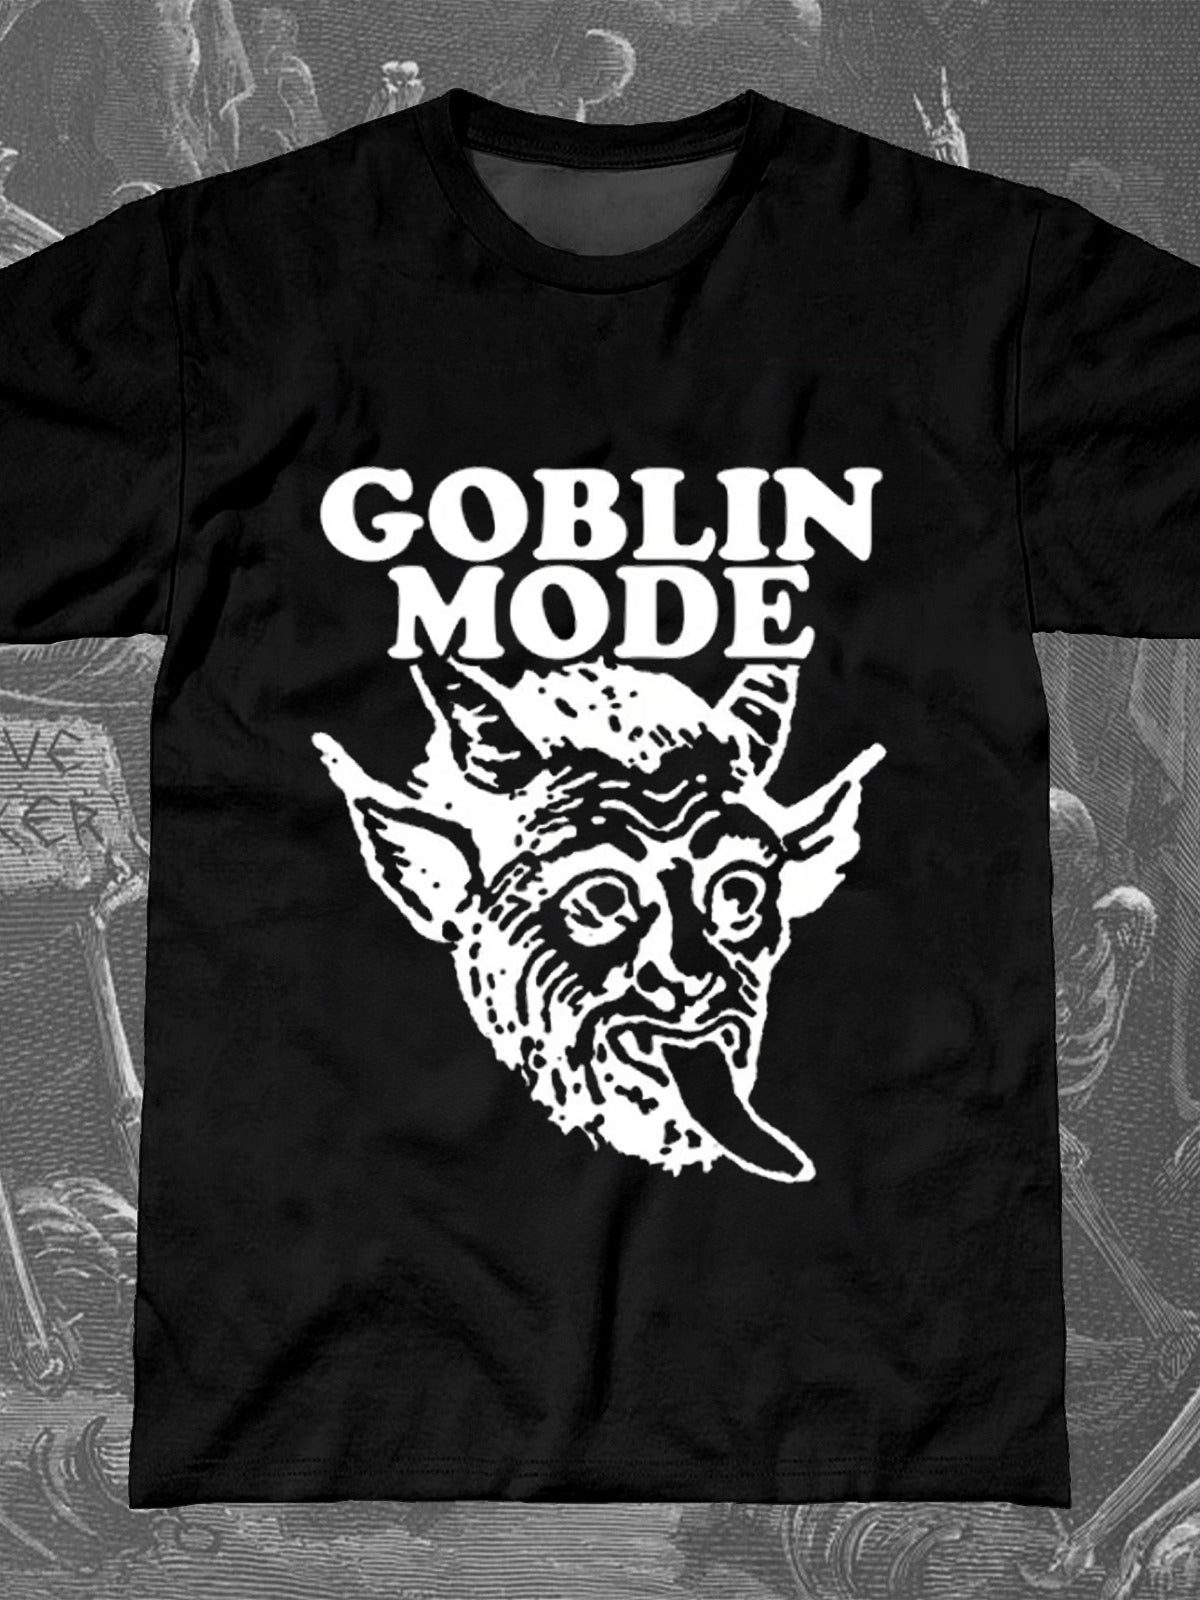 GOBLIN MODE Round Neck Short Sleeve Men's T-shirt